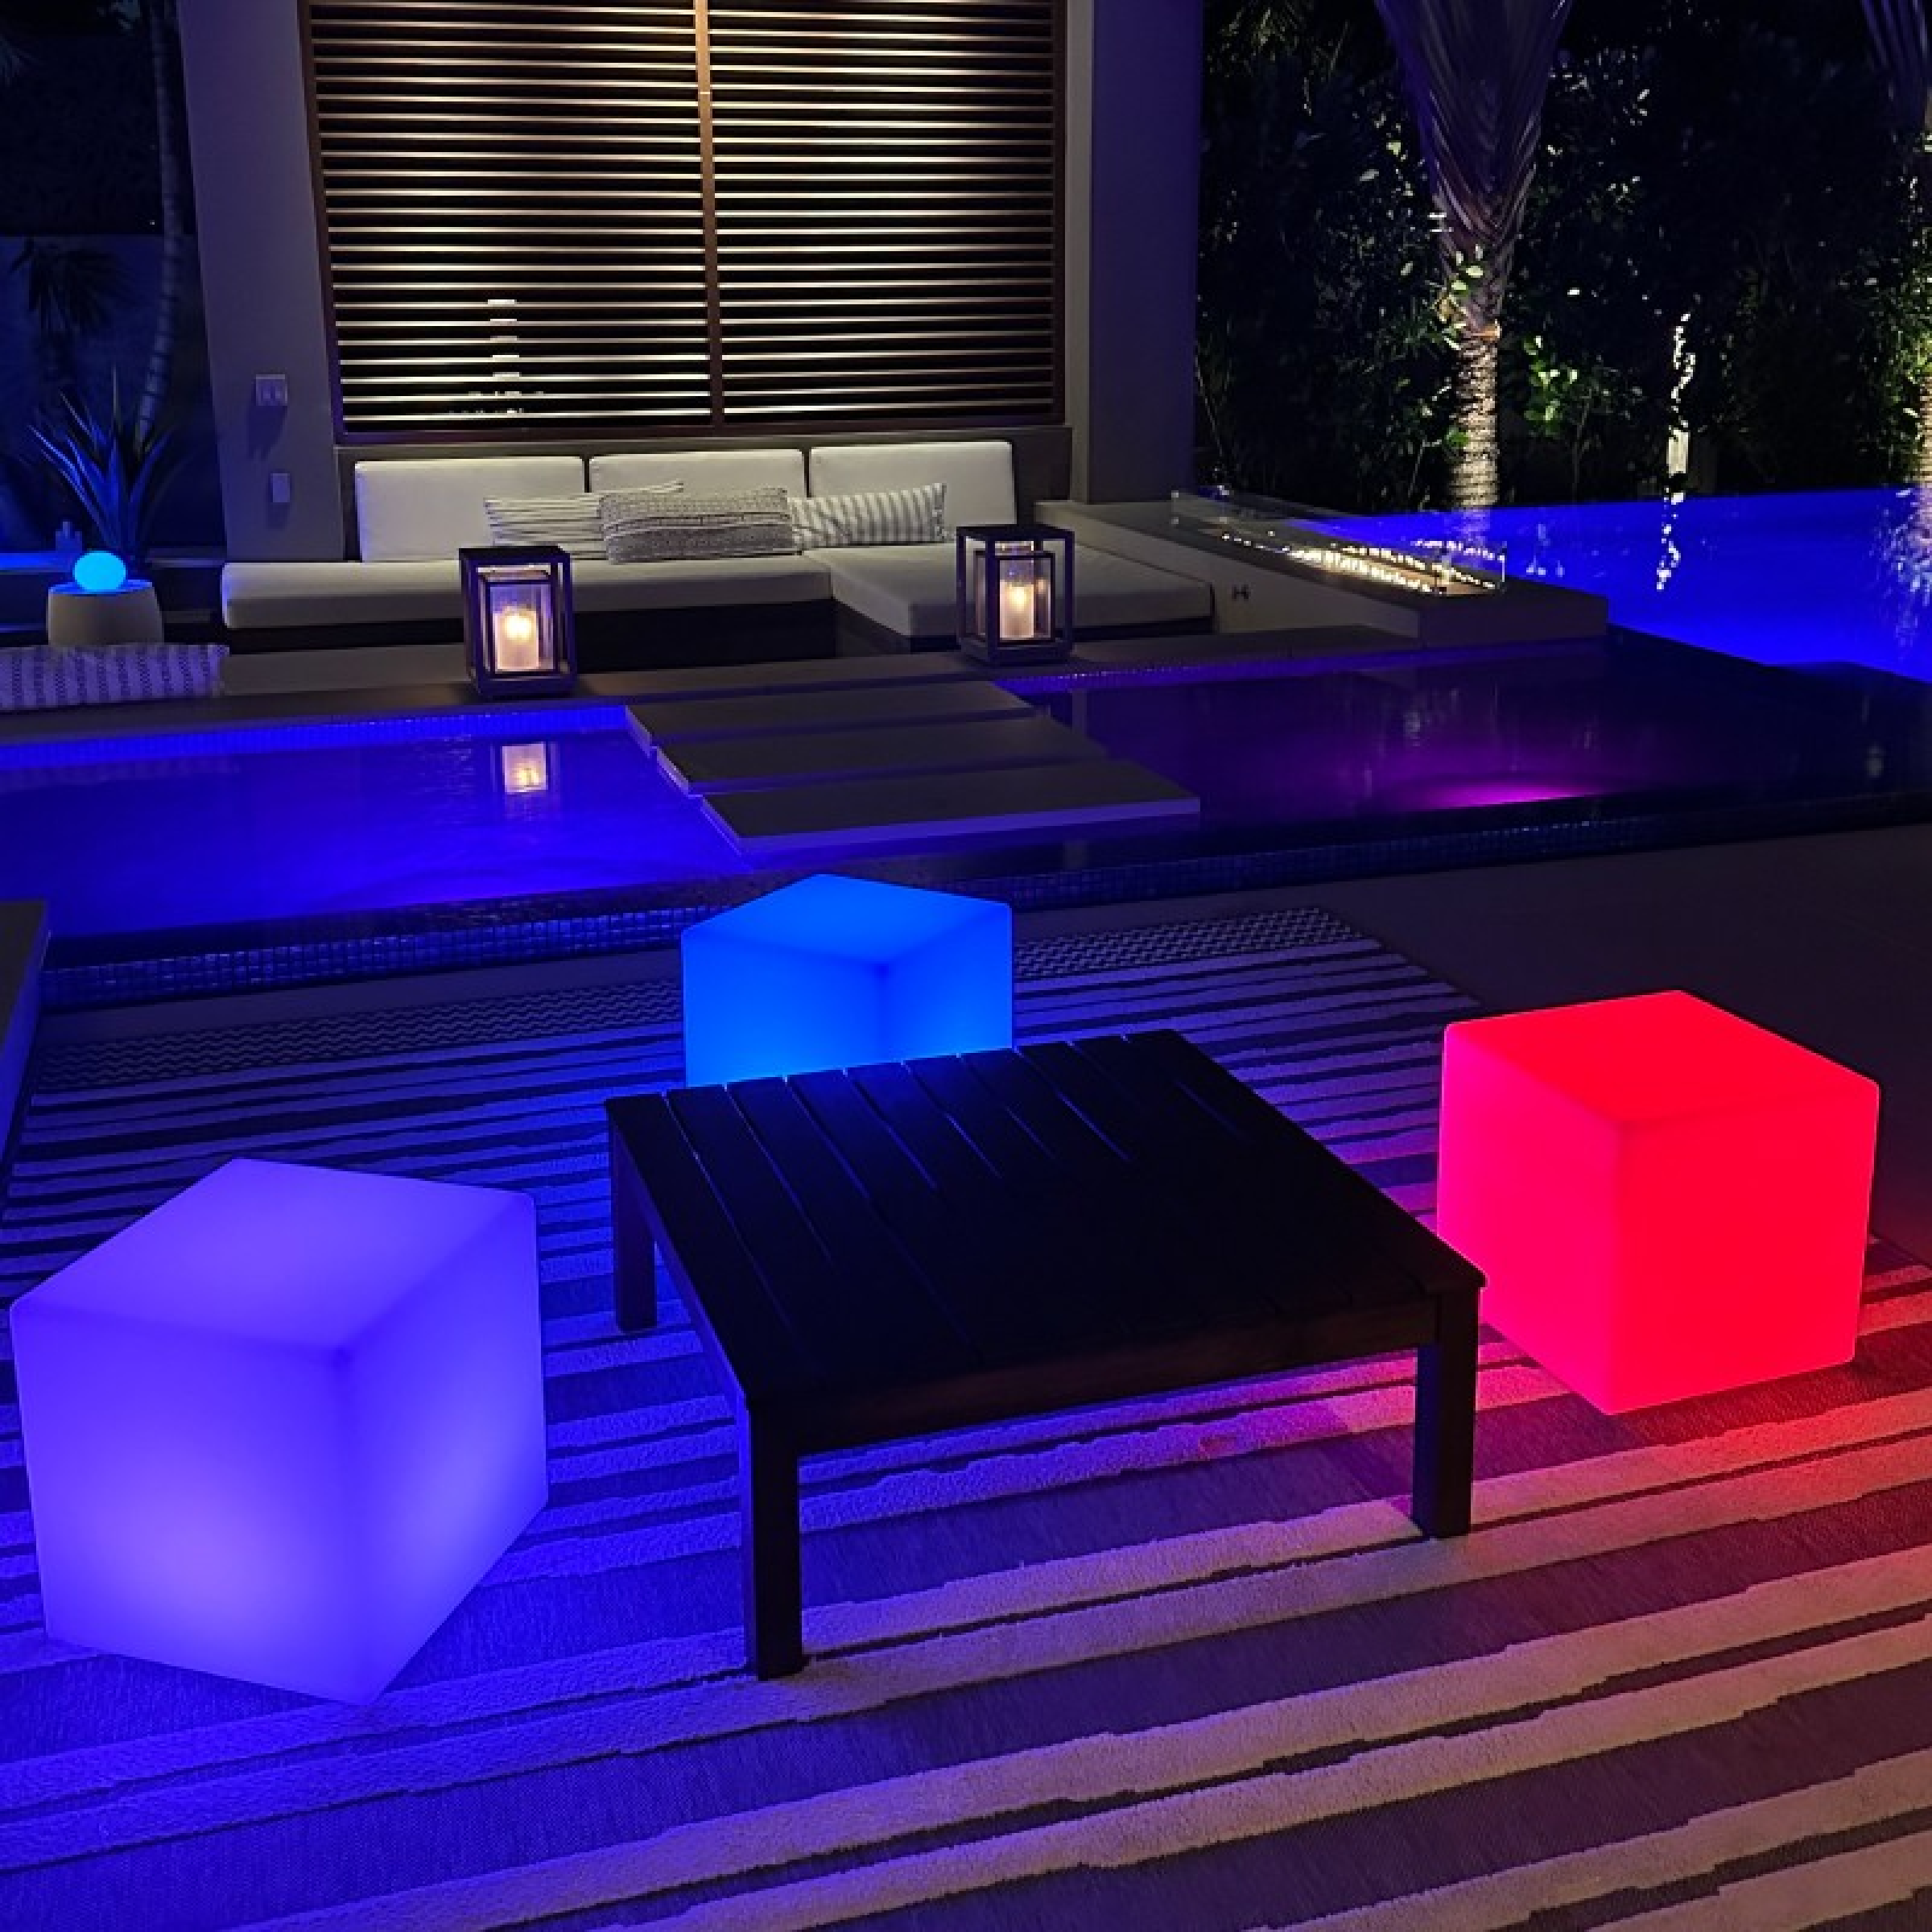 Smarte Deko: LED-Leuchtobjekt Cube - [SCHÖNER WOHNEN]